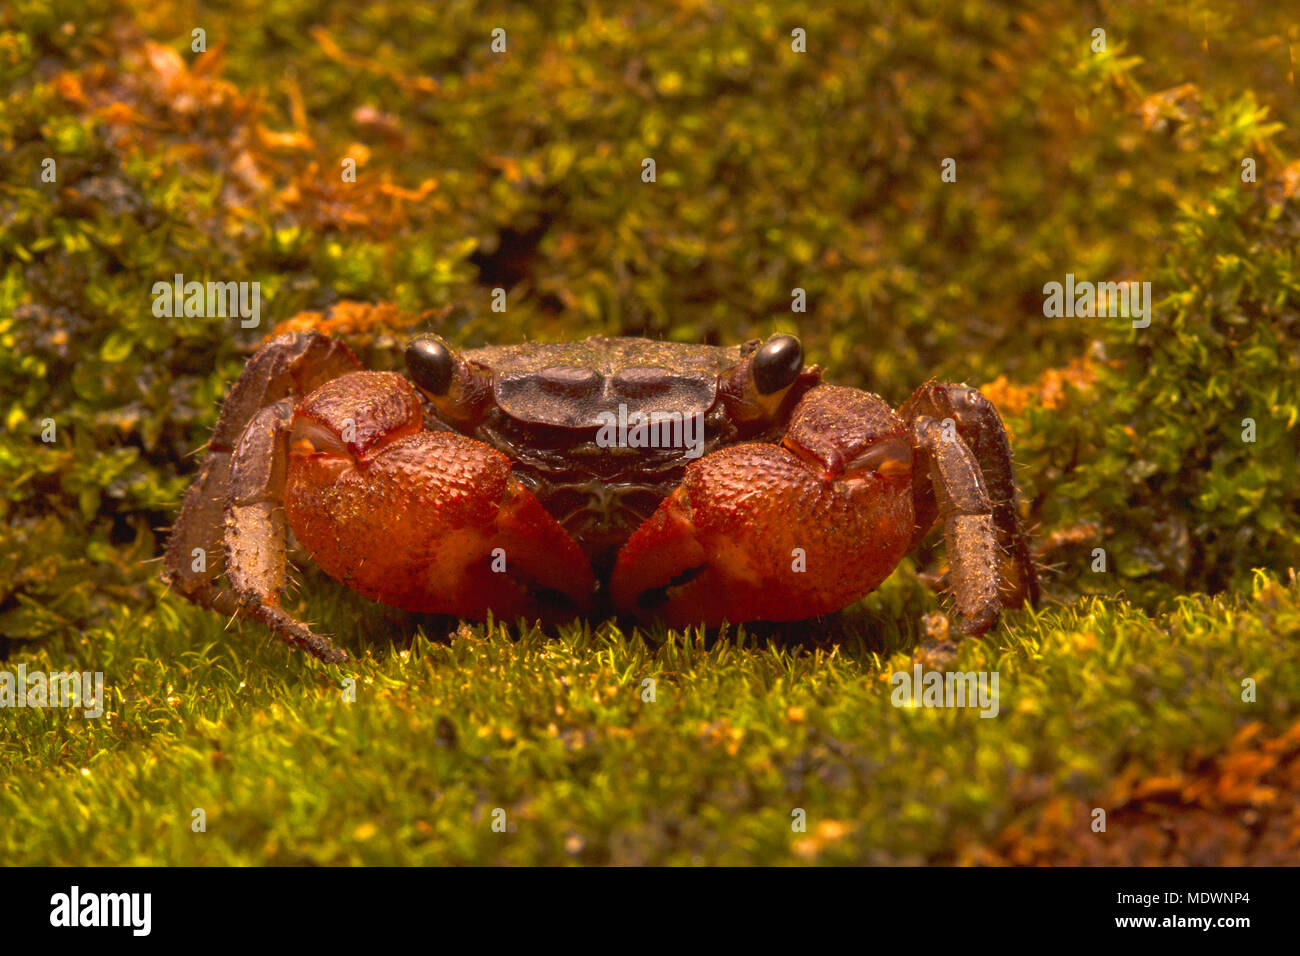 Tiny freshwater vampire crab Stock Photo